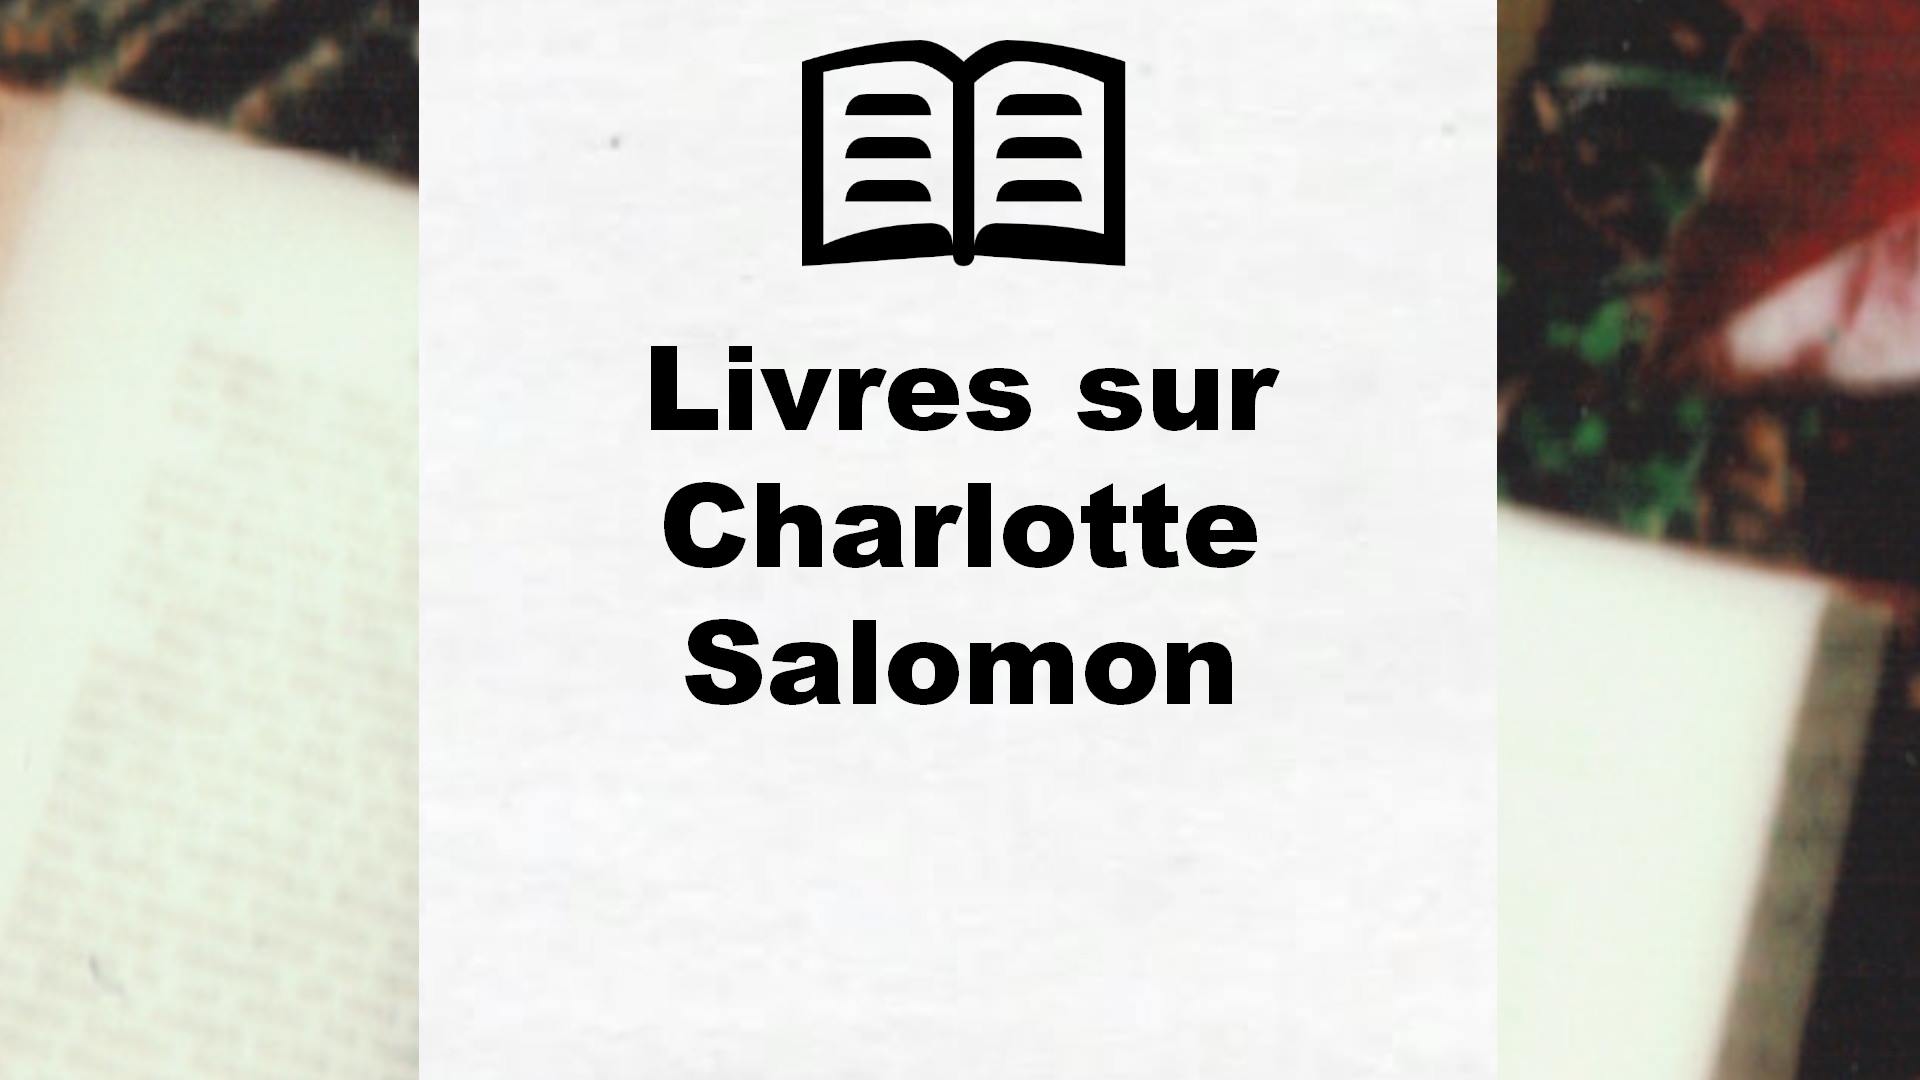 Livres sur Charlotte Salomon